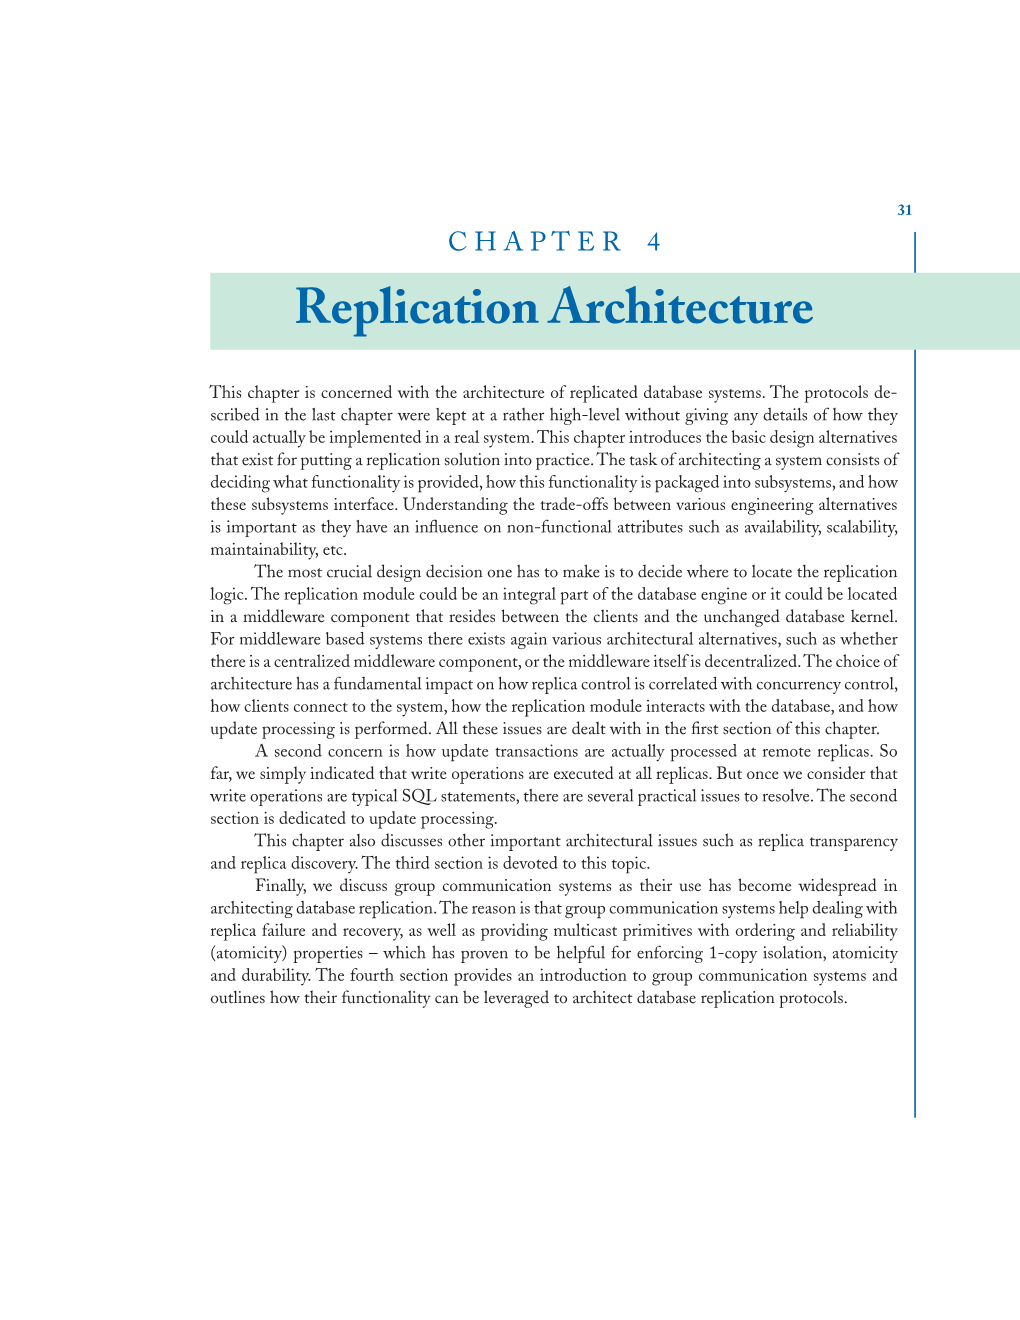 Replication Architecture